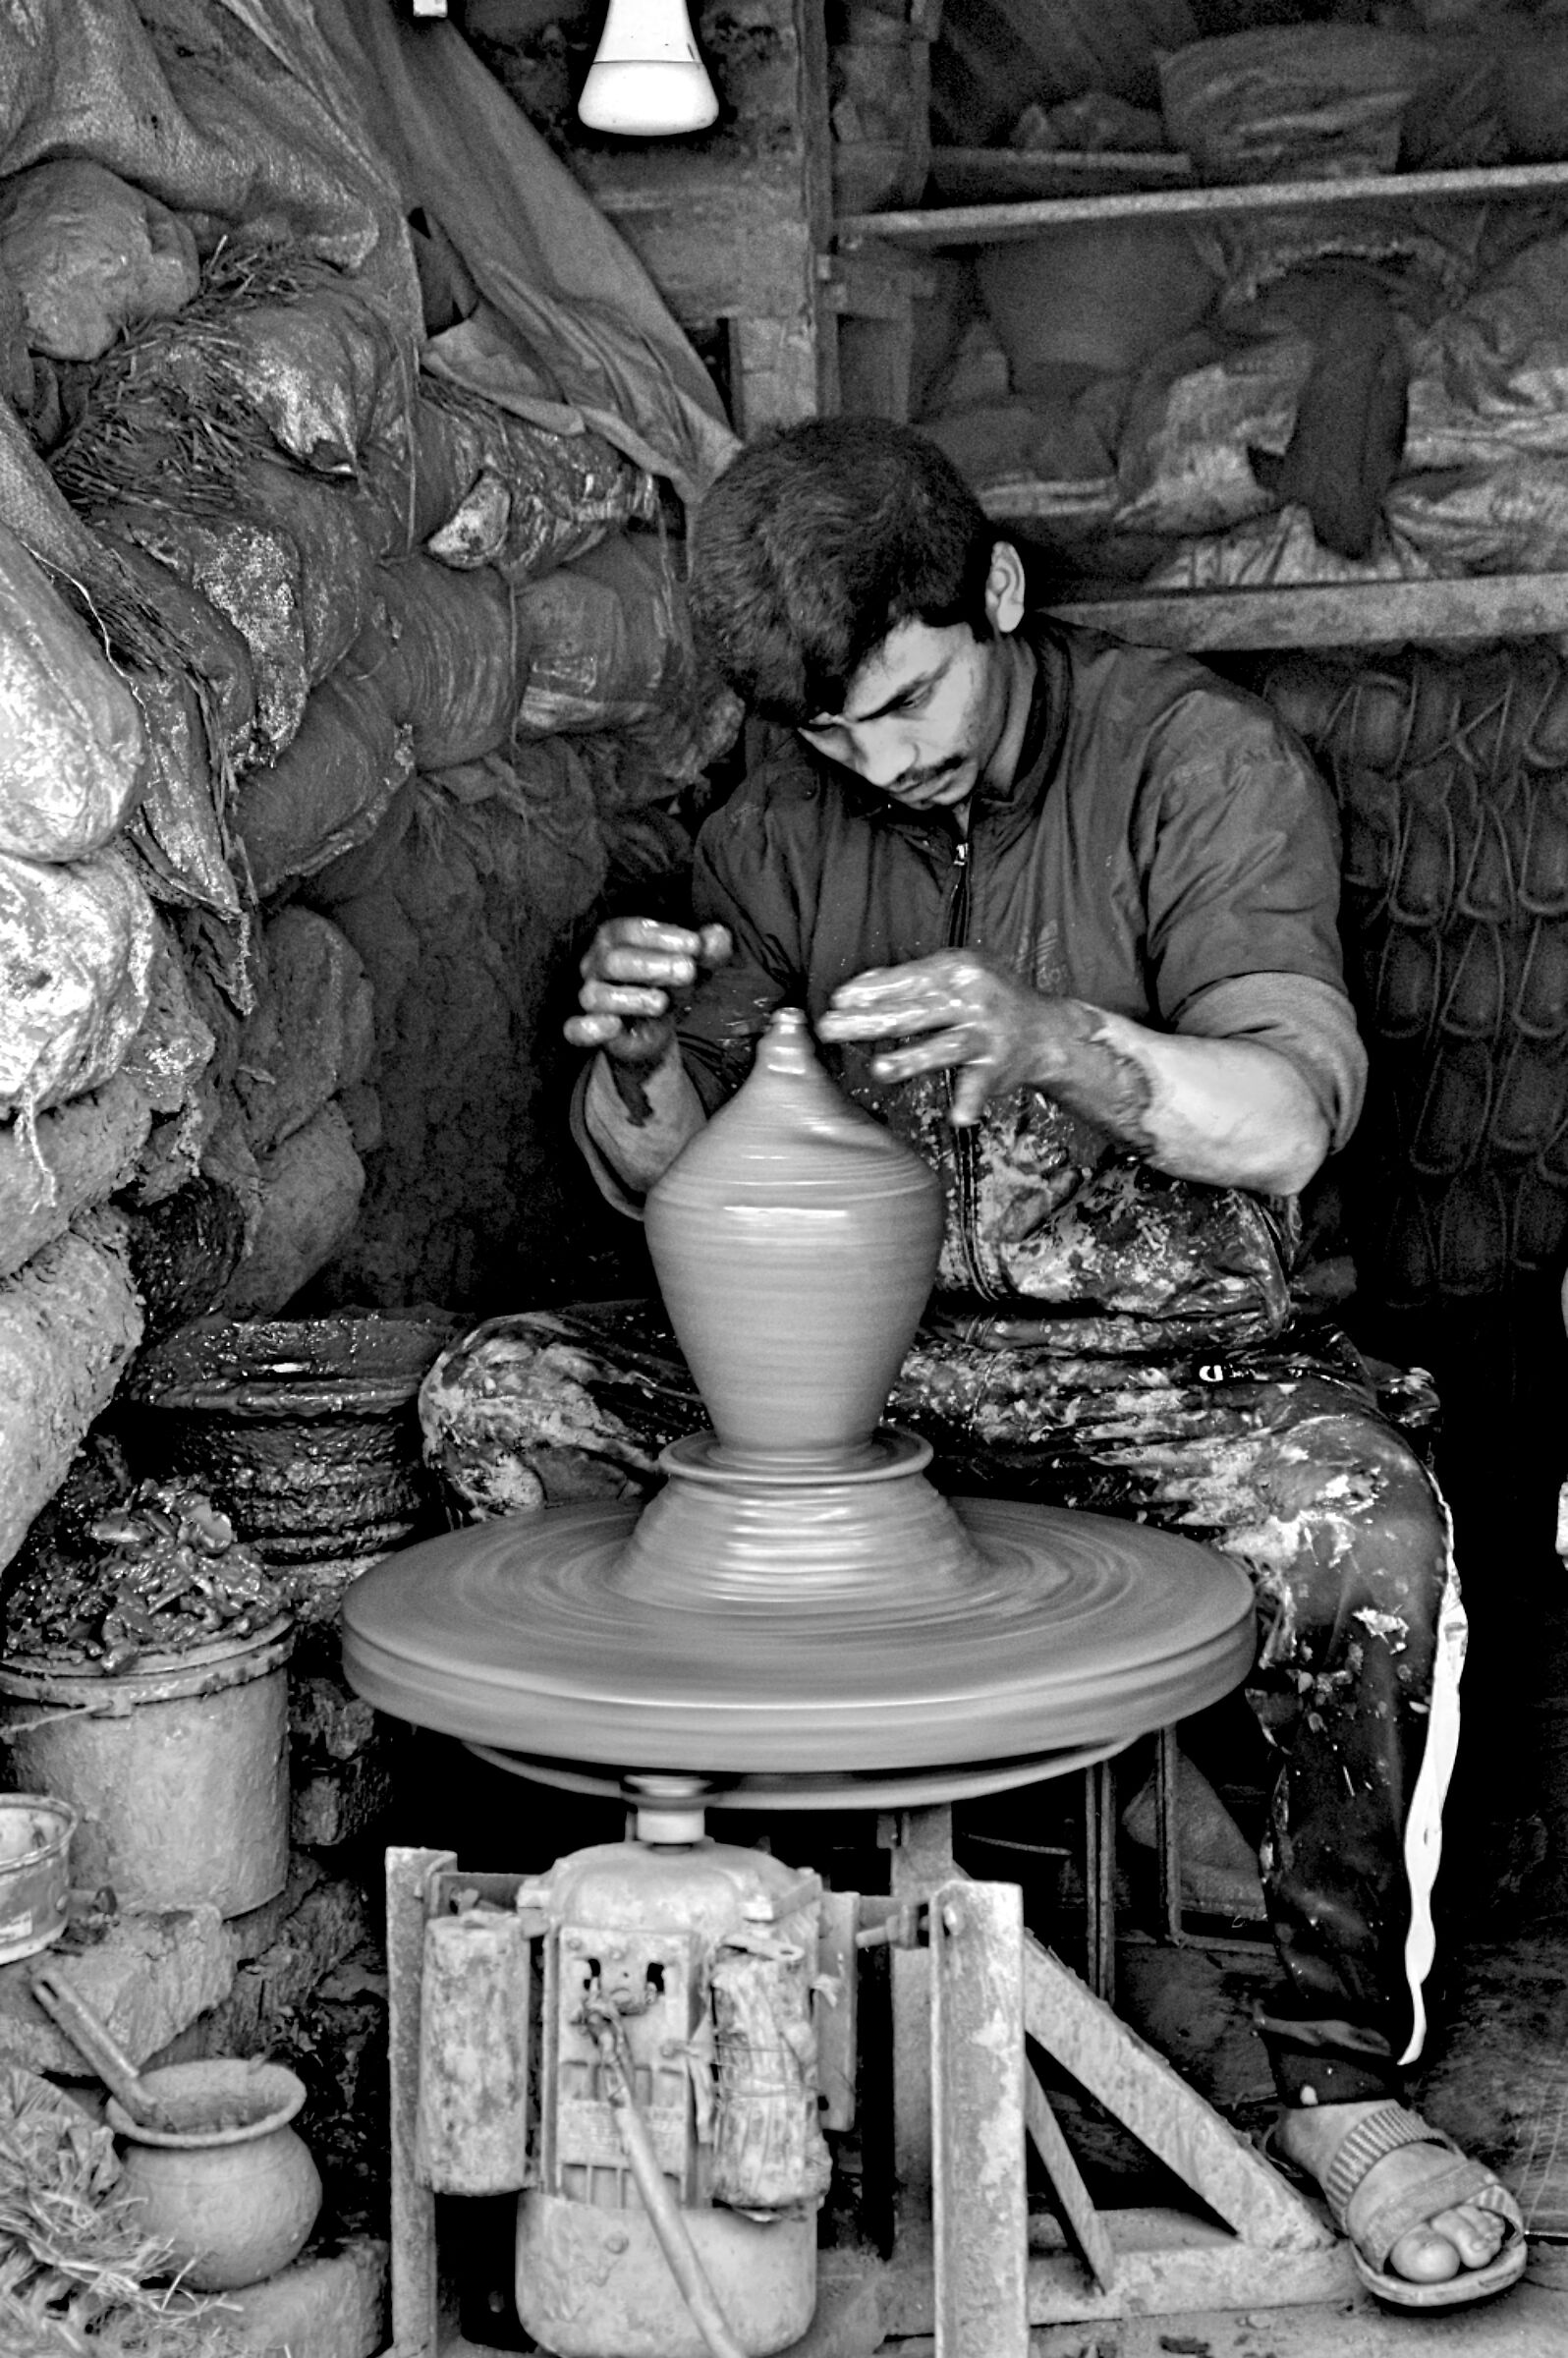 Craftsman in his workshop...